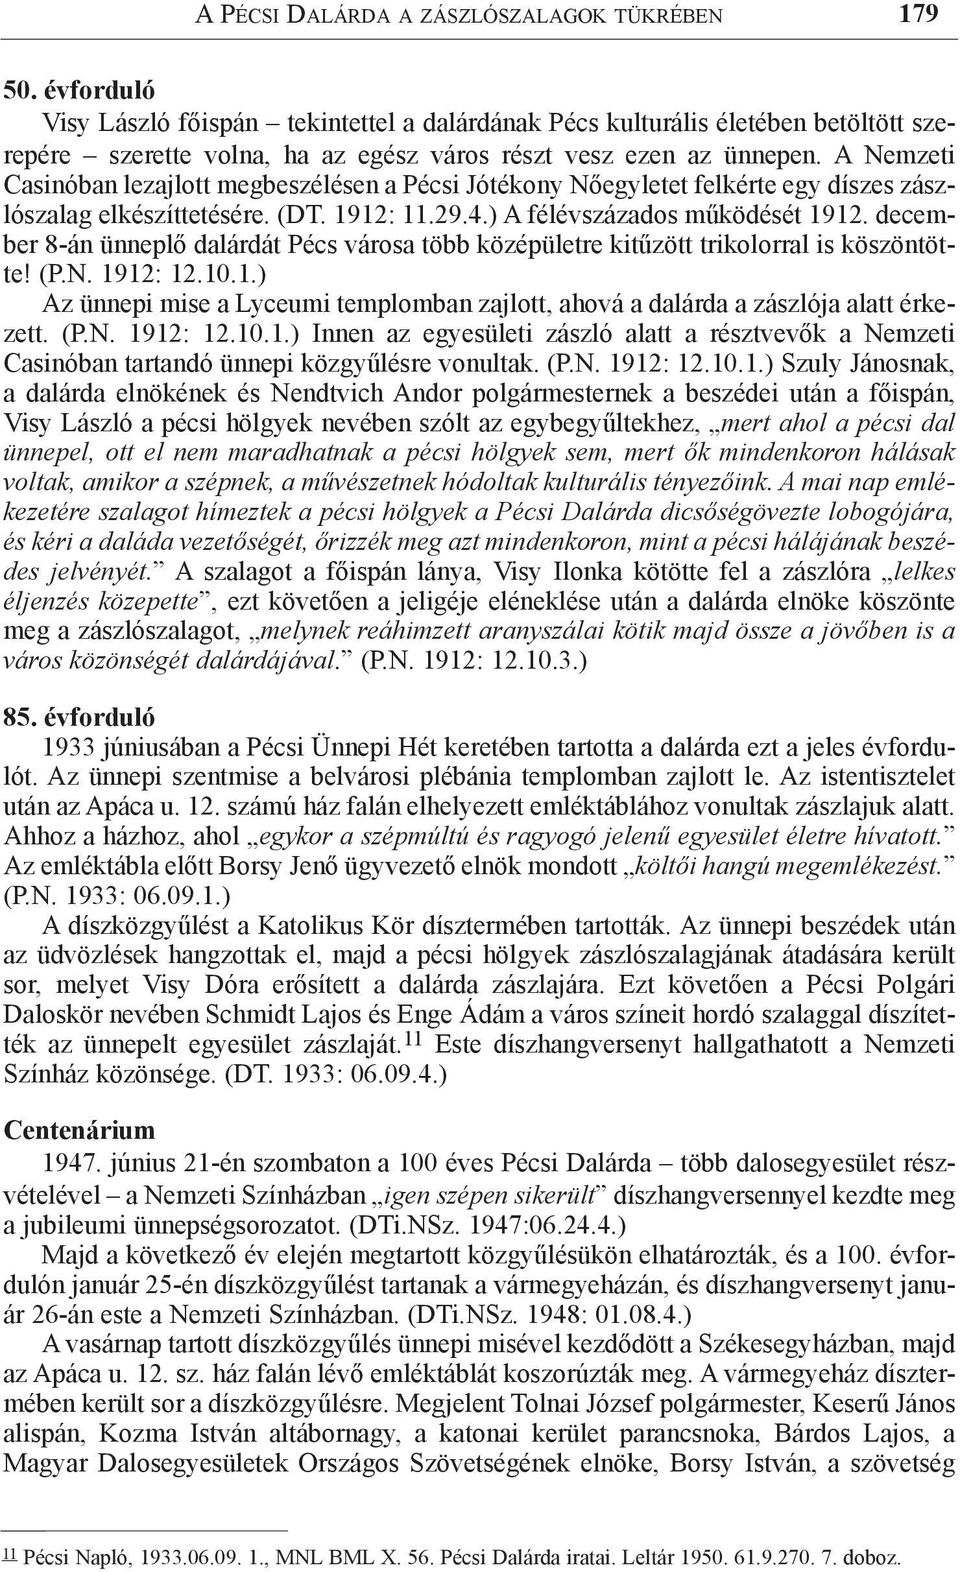 A Nemzeti Casinóban lezajlott megbeszélésen a Pécsi Jótékony Nőegyletet felkérte egy díszes zászlószalag elkészíttetésére. (DT. 1912: 11.29.4.) A félévszázados működését 1912.